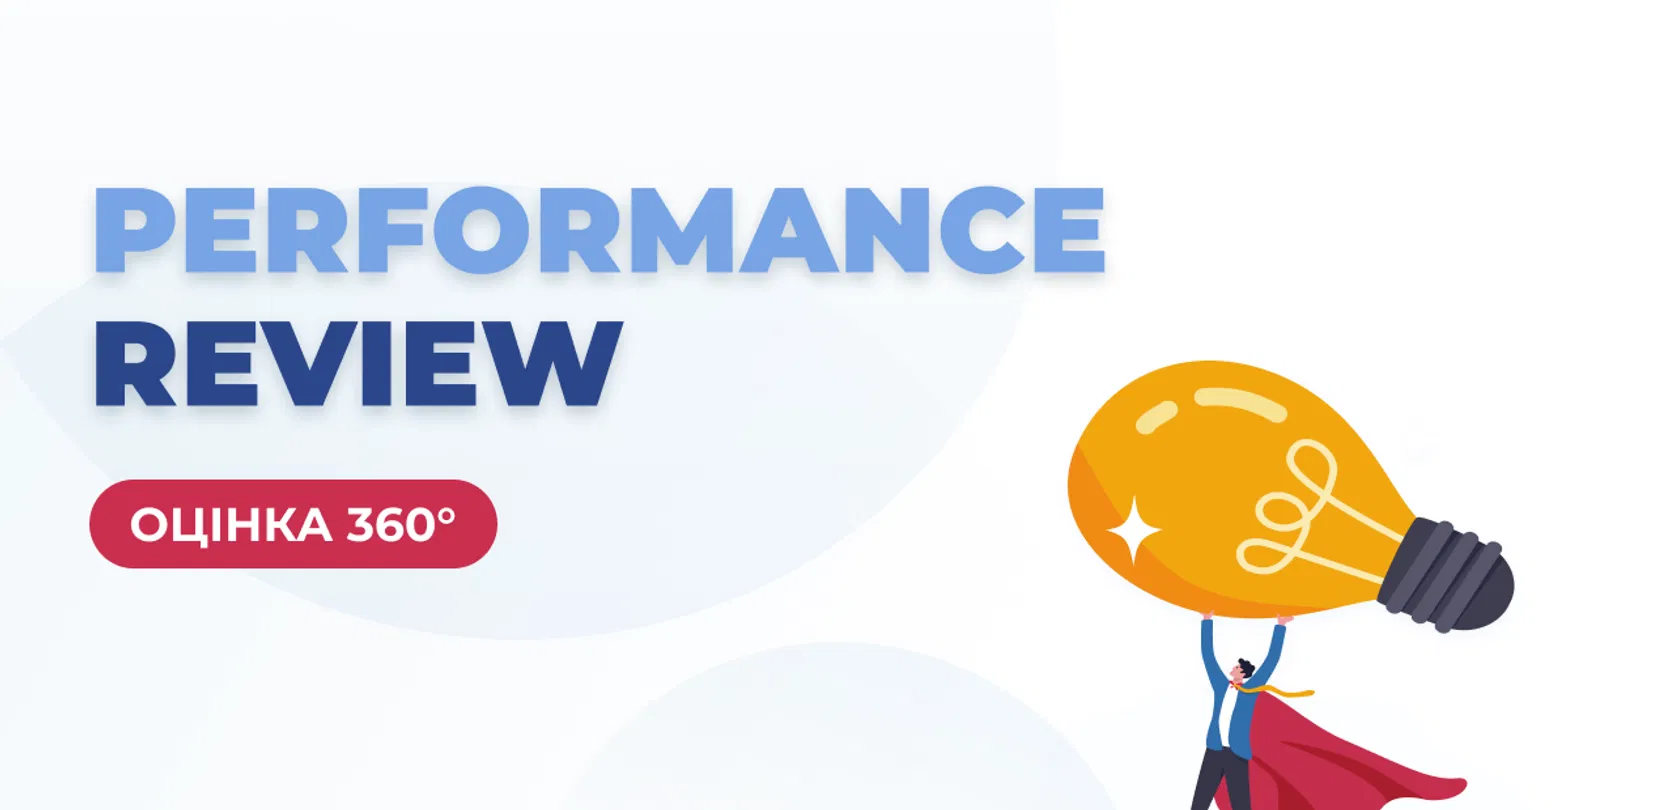 Оцінка 360° для performance review